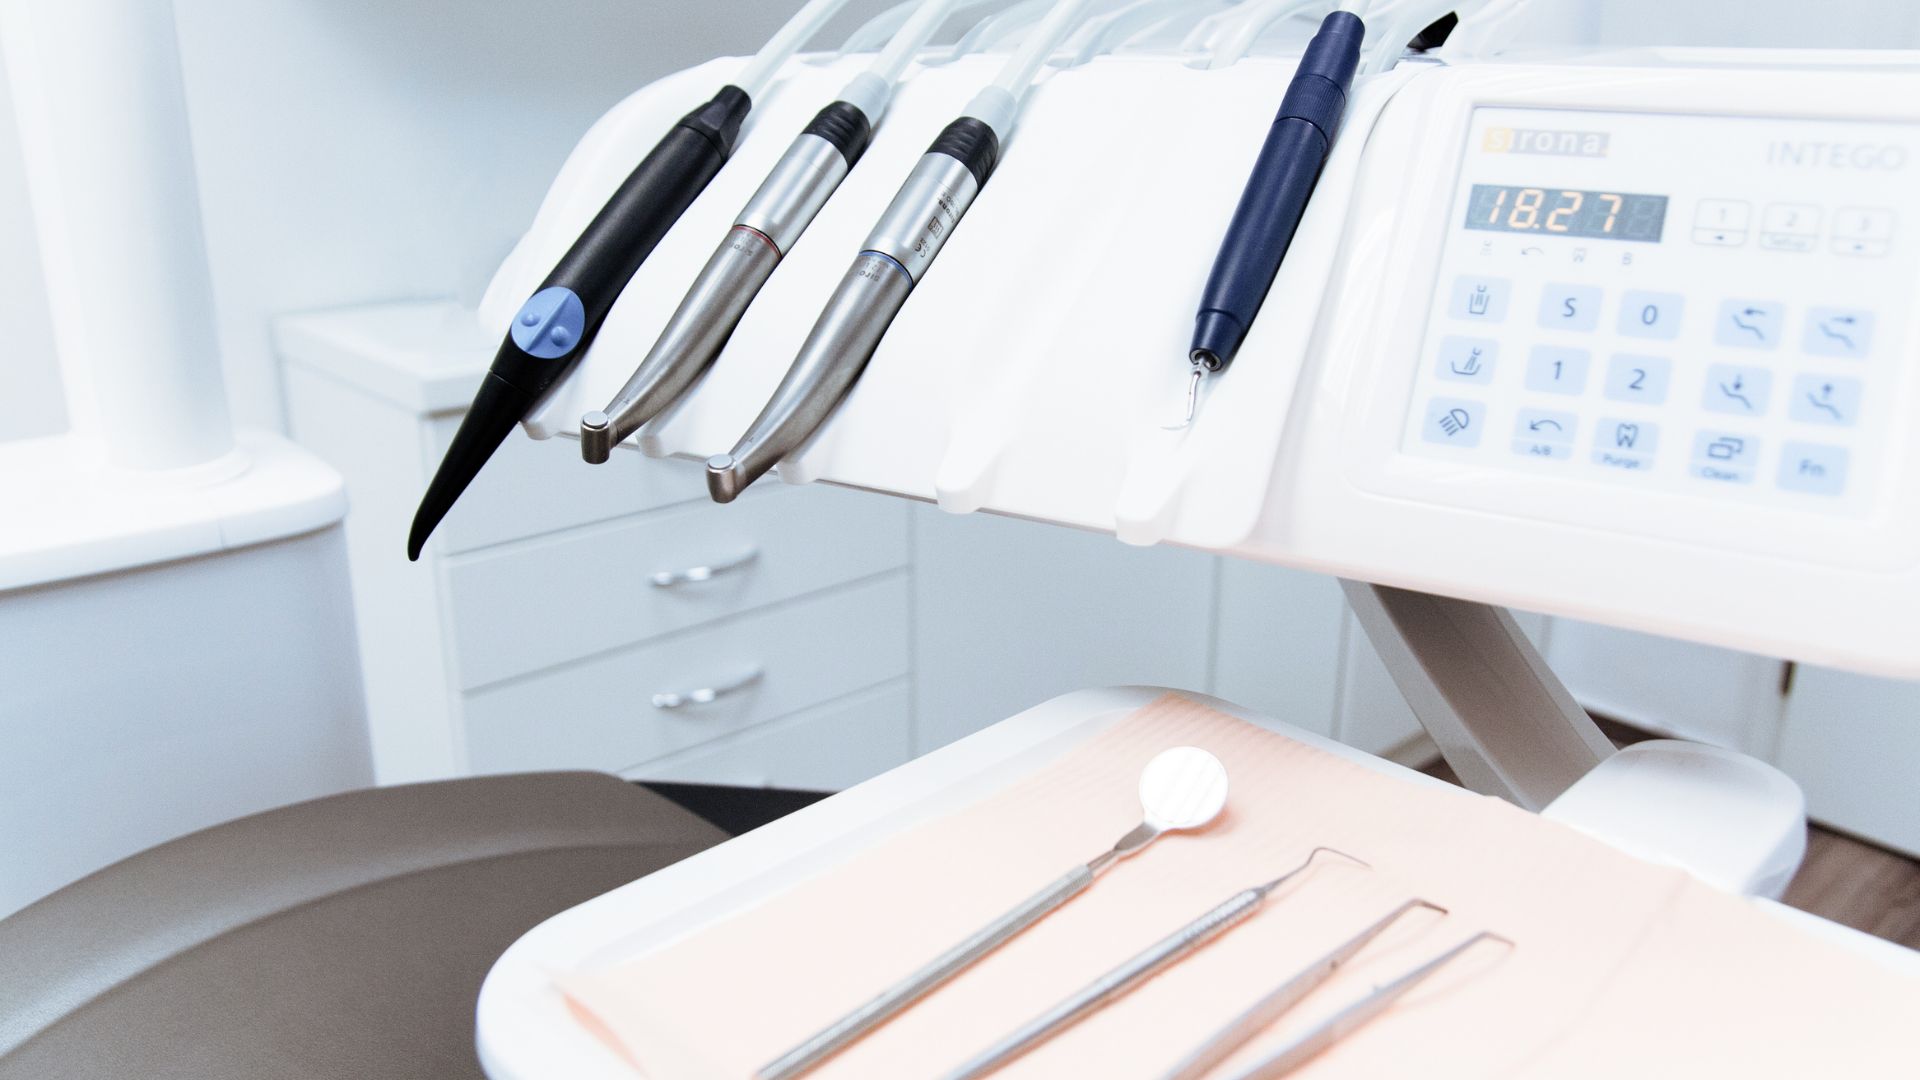 Come affrontare l'estrazione dentale consigli utili - dentista zappa - arcore - estrazione dentale